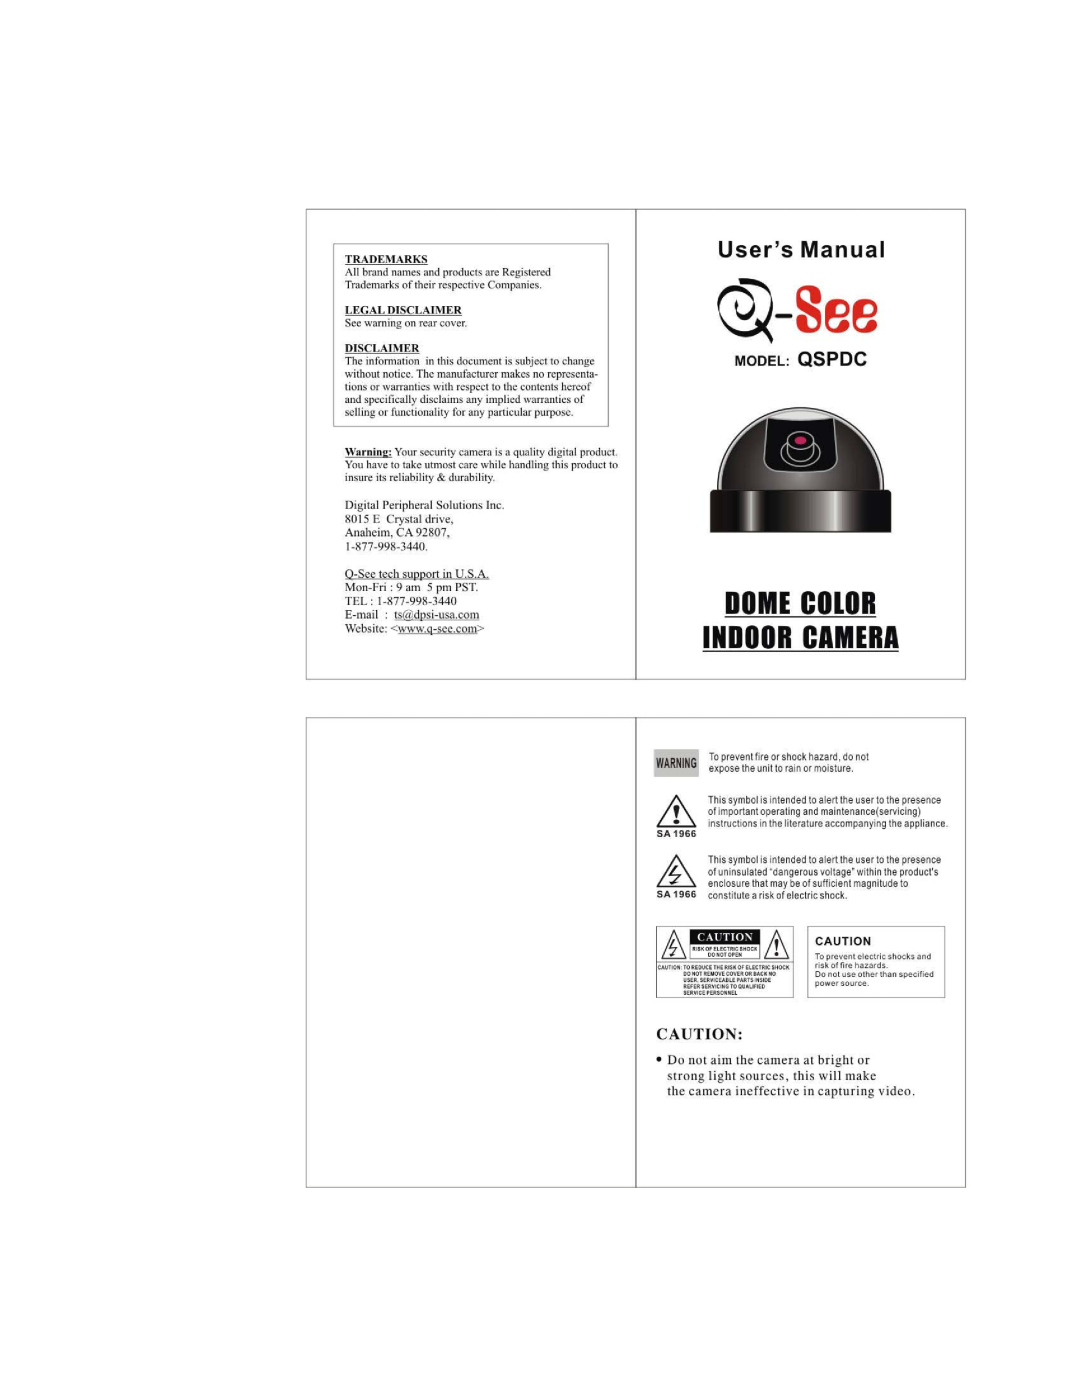 Q-See QSPDC manual 